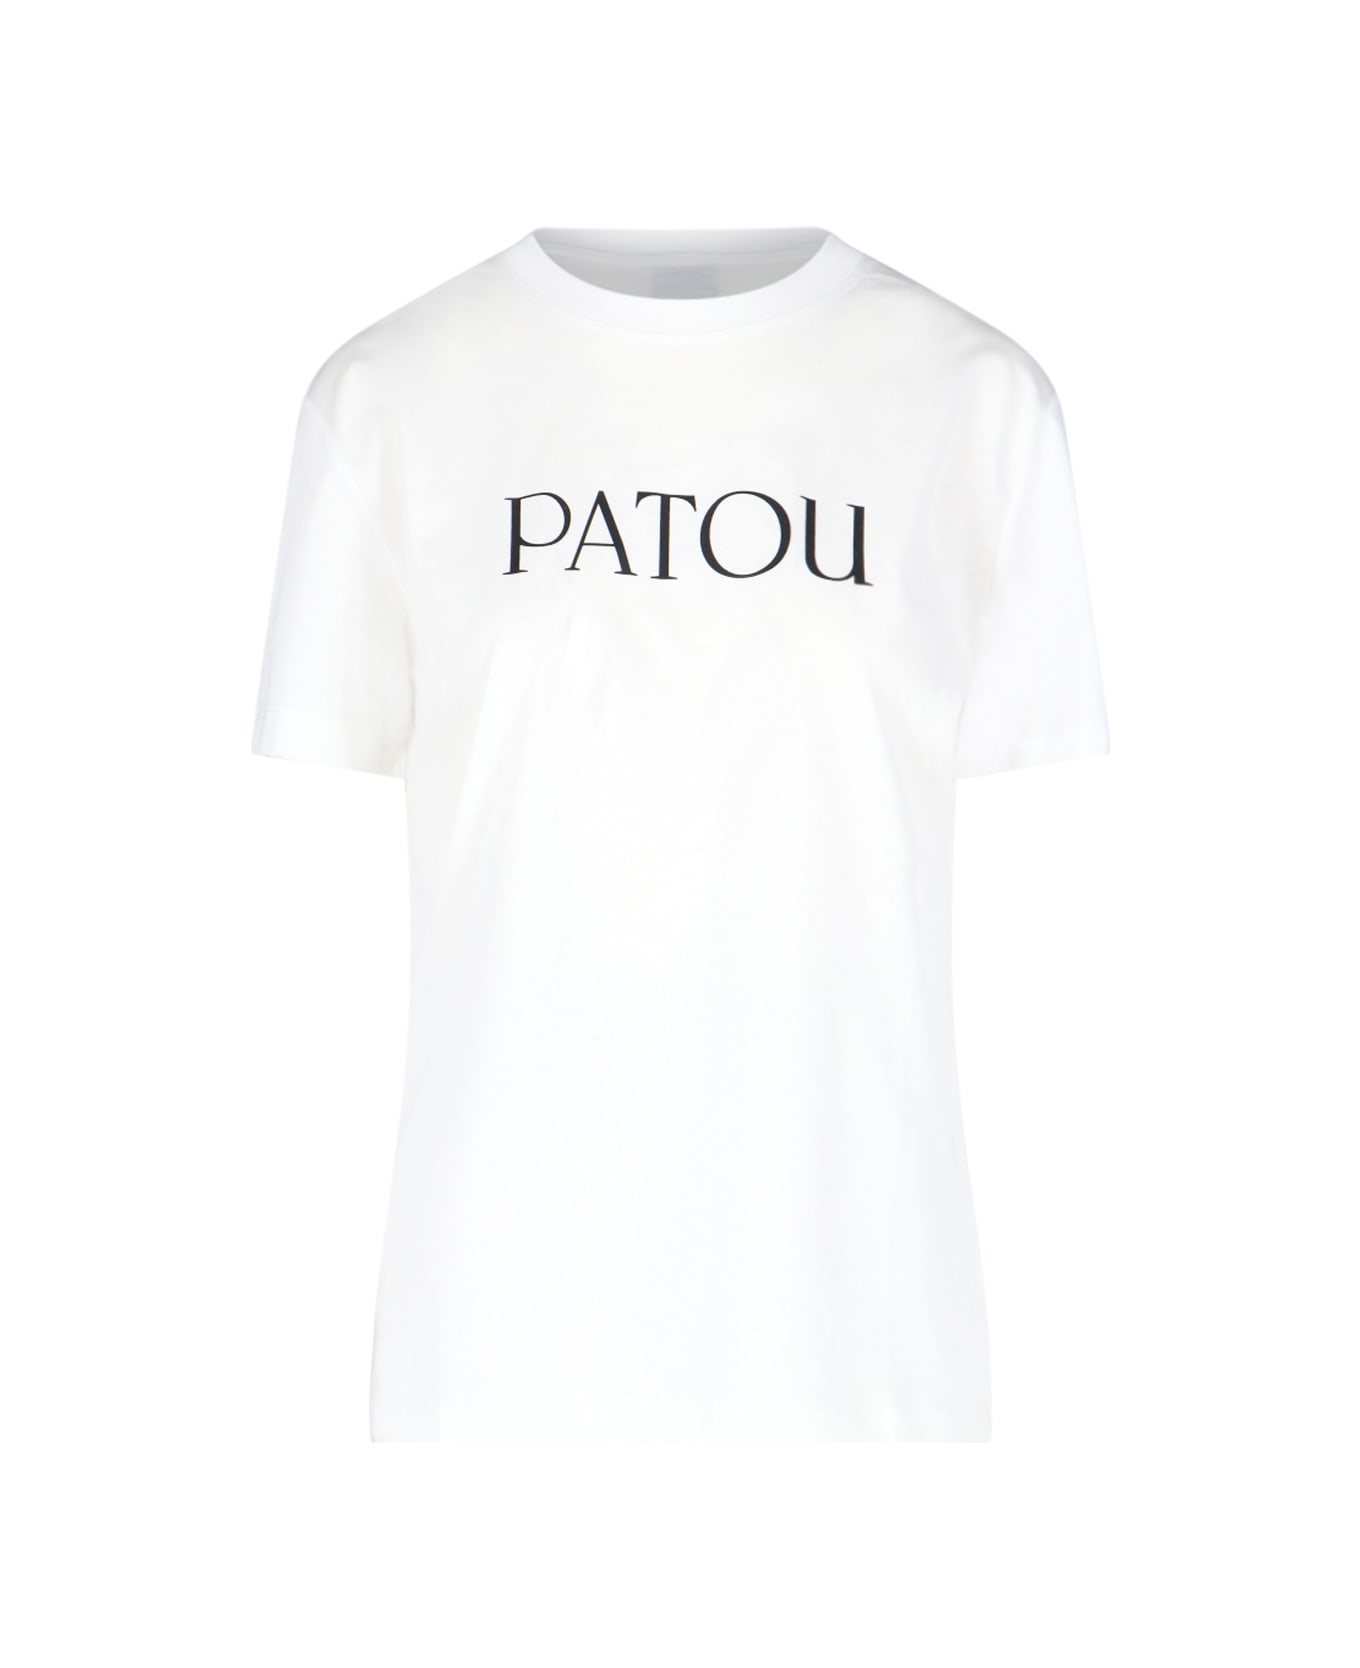 Patou Logo T-shirt - White